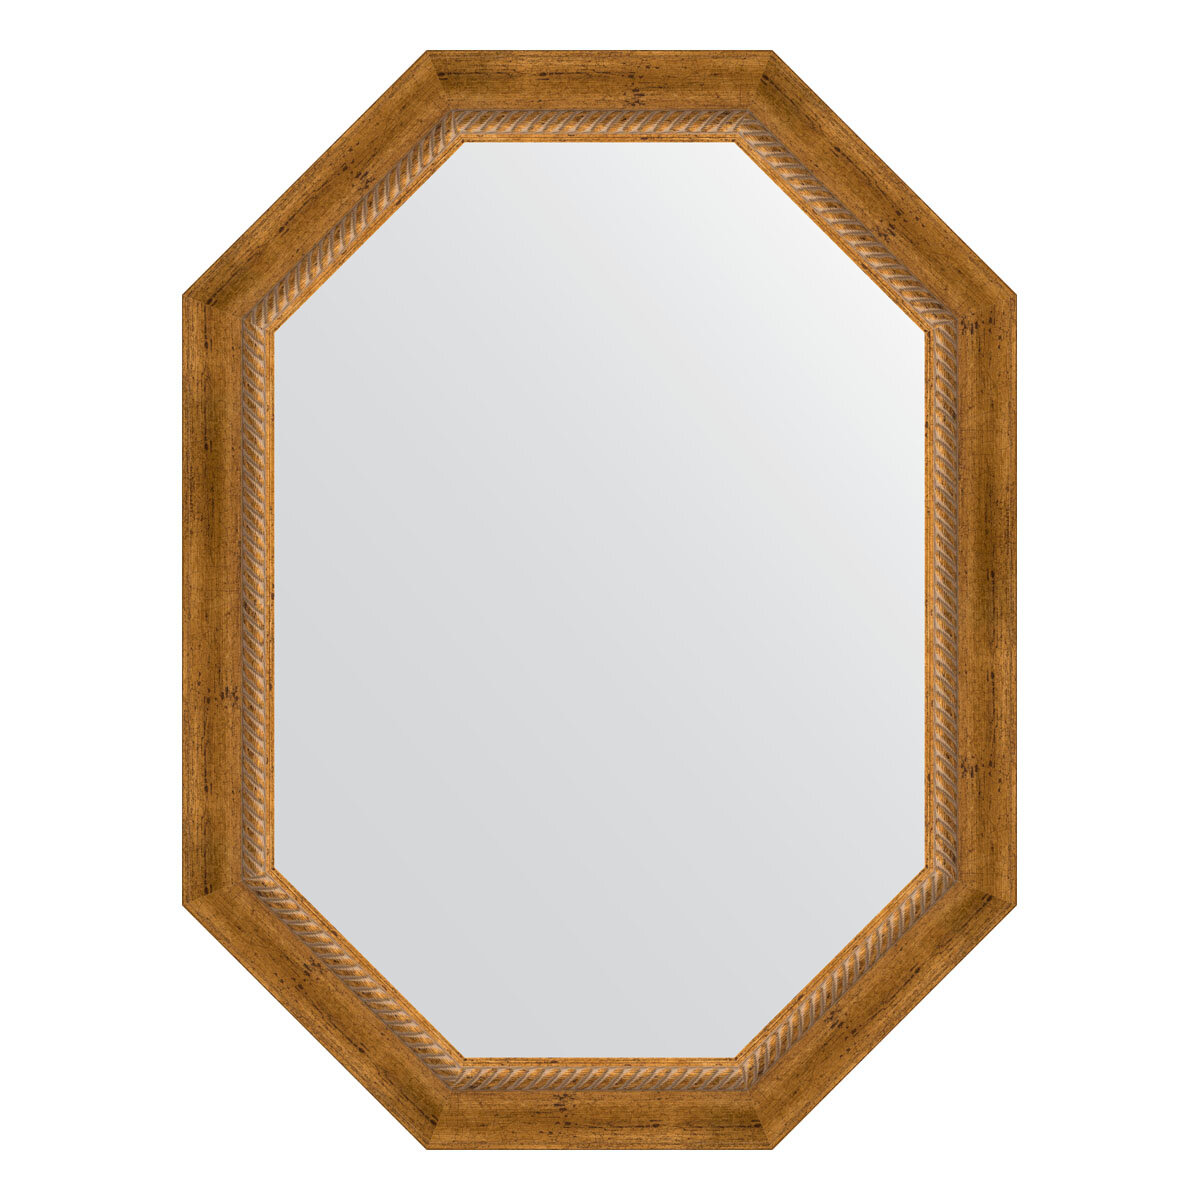 Зеркало настенное Polygon EVOFORM в багетной раме состаренная бронза с плетением, 63х83 см, для гостиной, прихожей, спальни и ванной комнаты, BY 7115